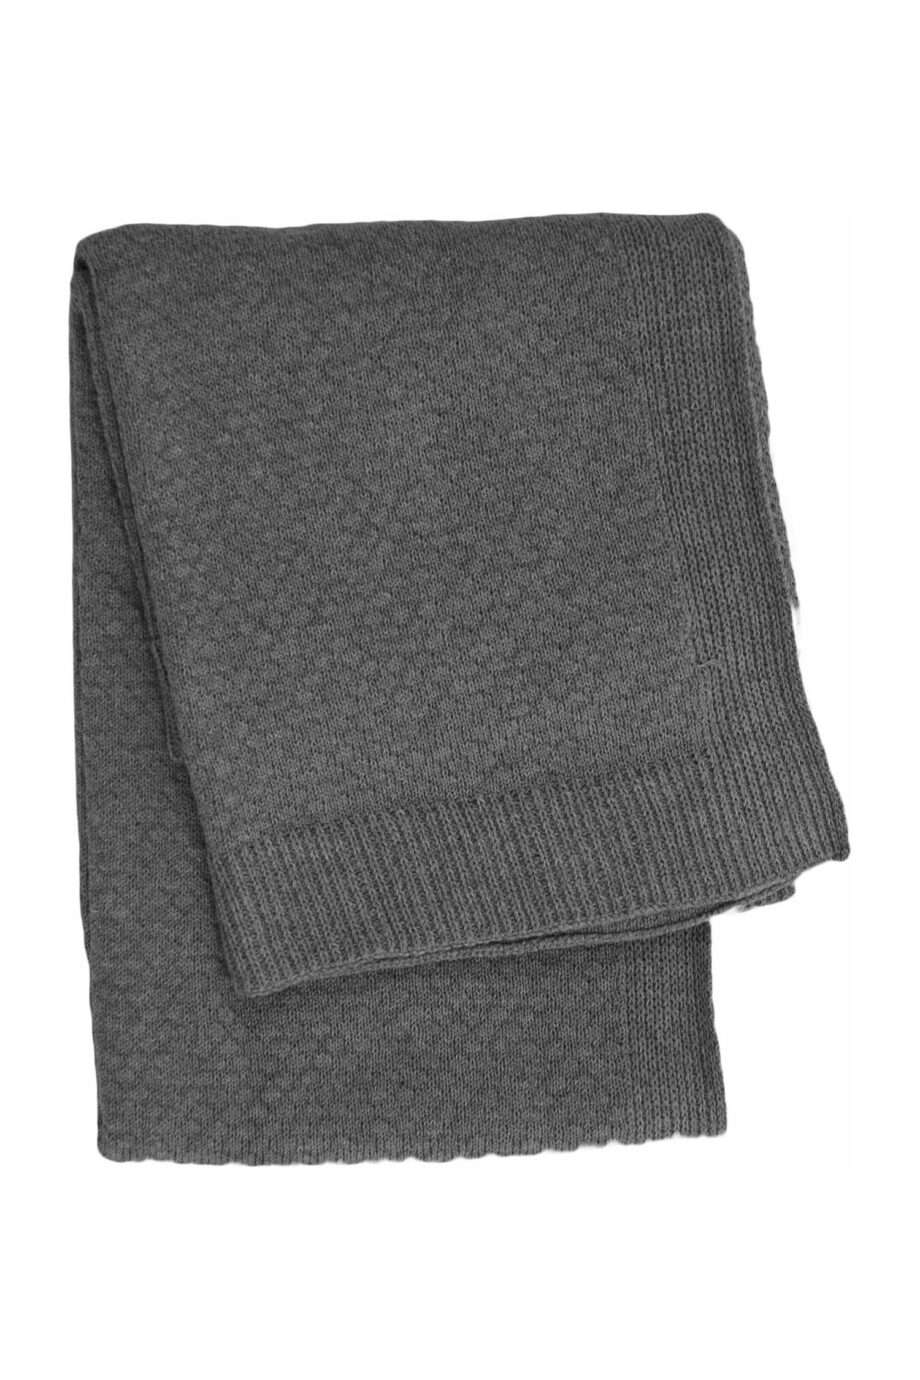 liz anthracite knitted cotton little blanket medium